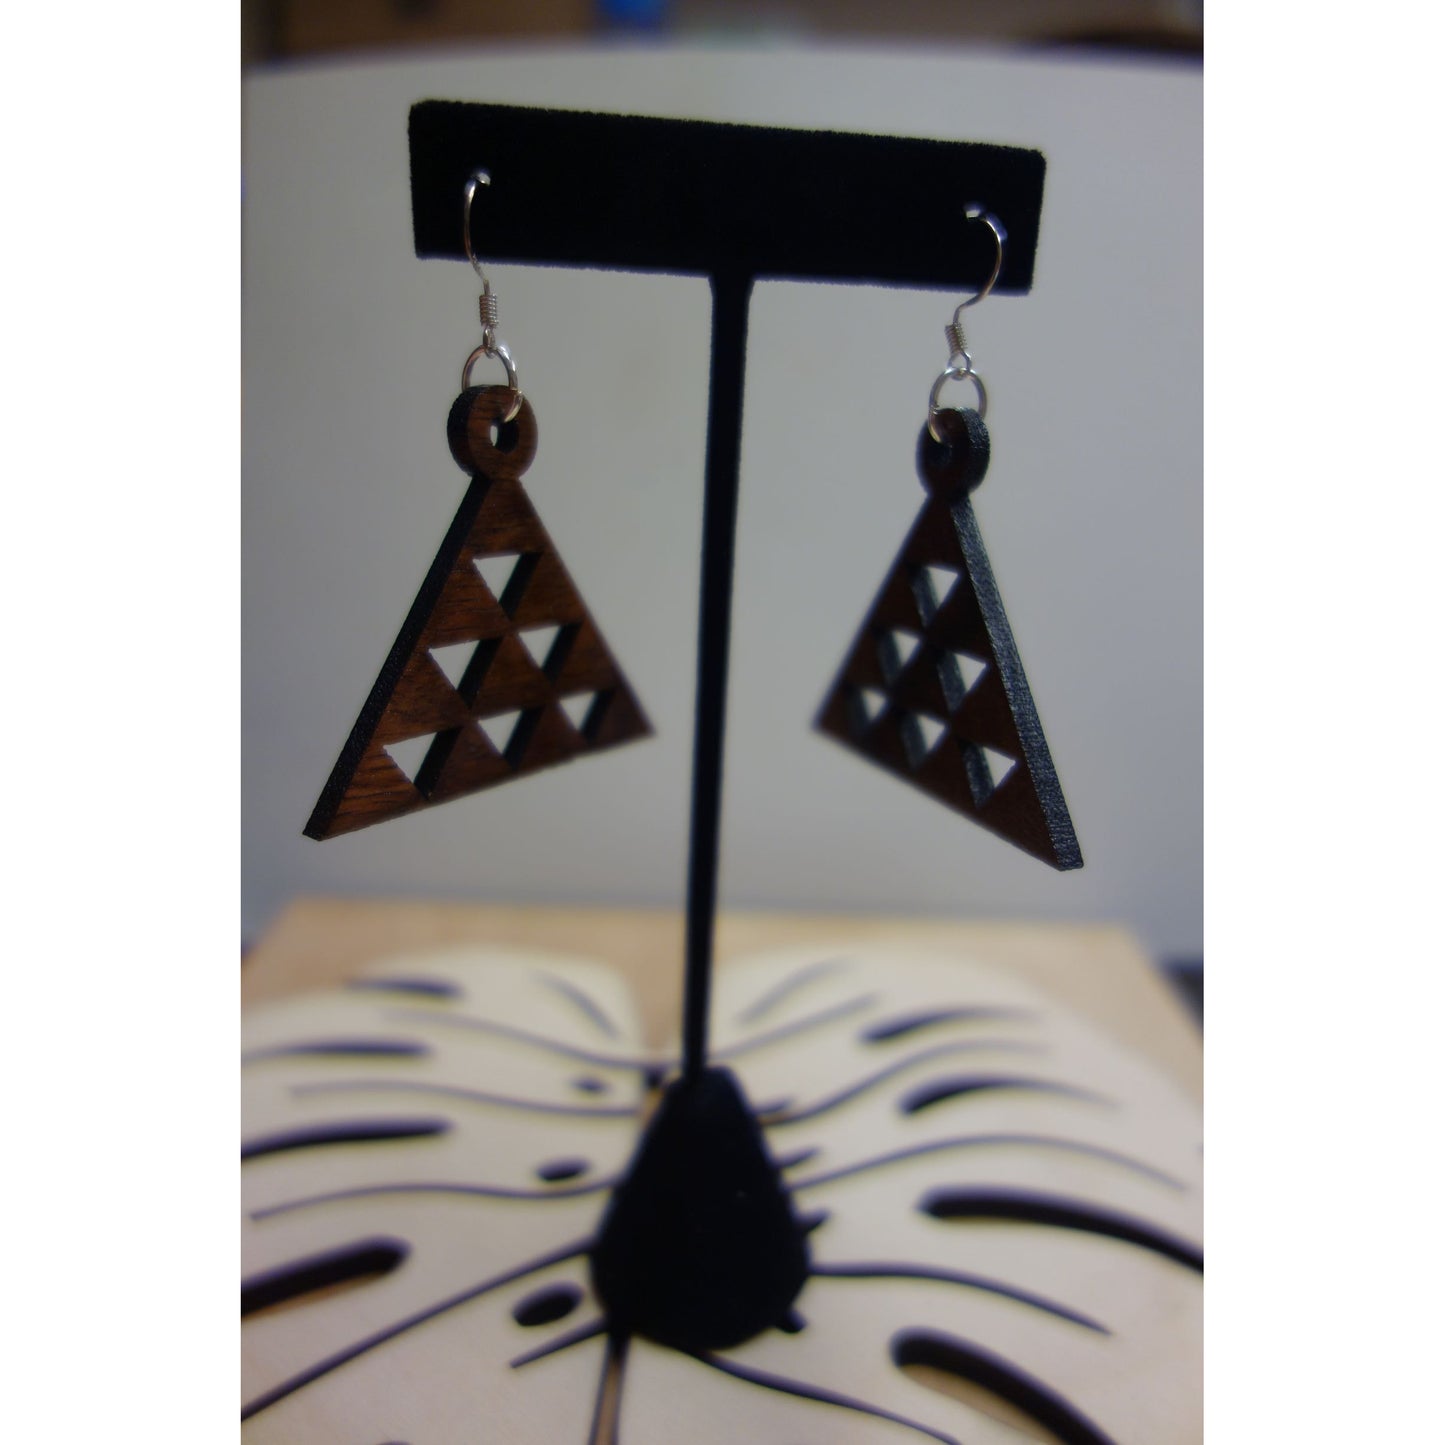 Triangle Mauna Kea Solid Koa Wood Earrings